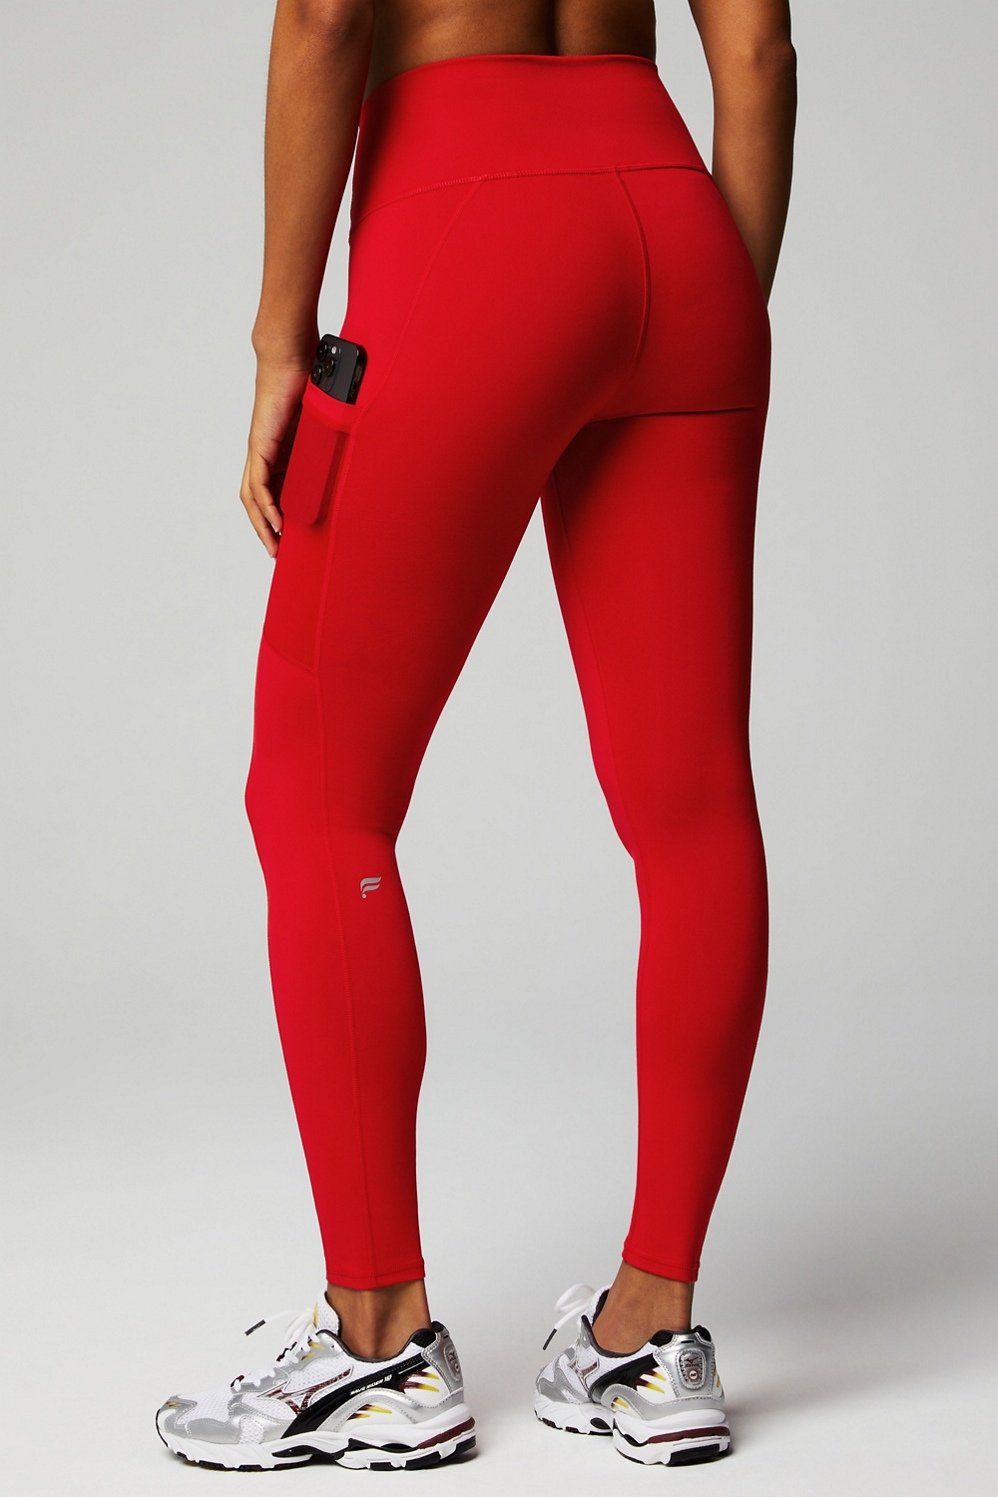 Women's Leggings, Red-mottled, S-XL 